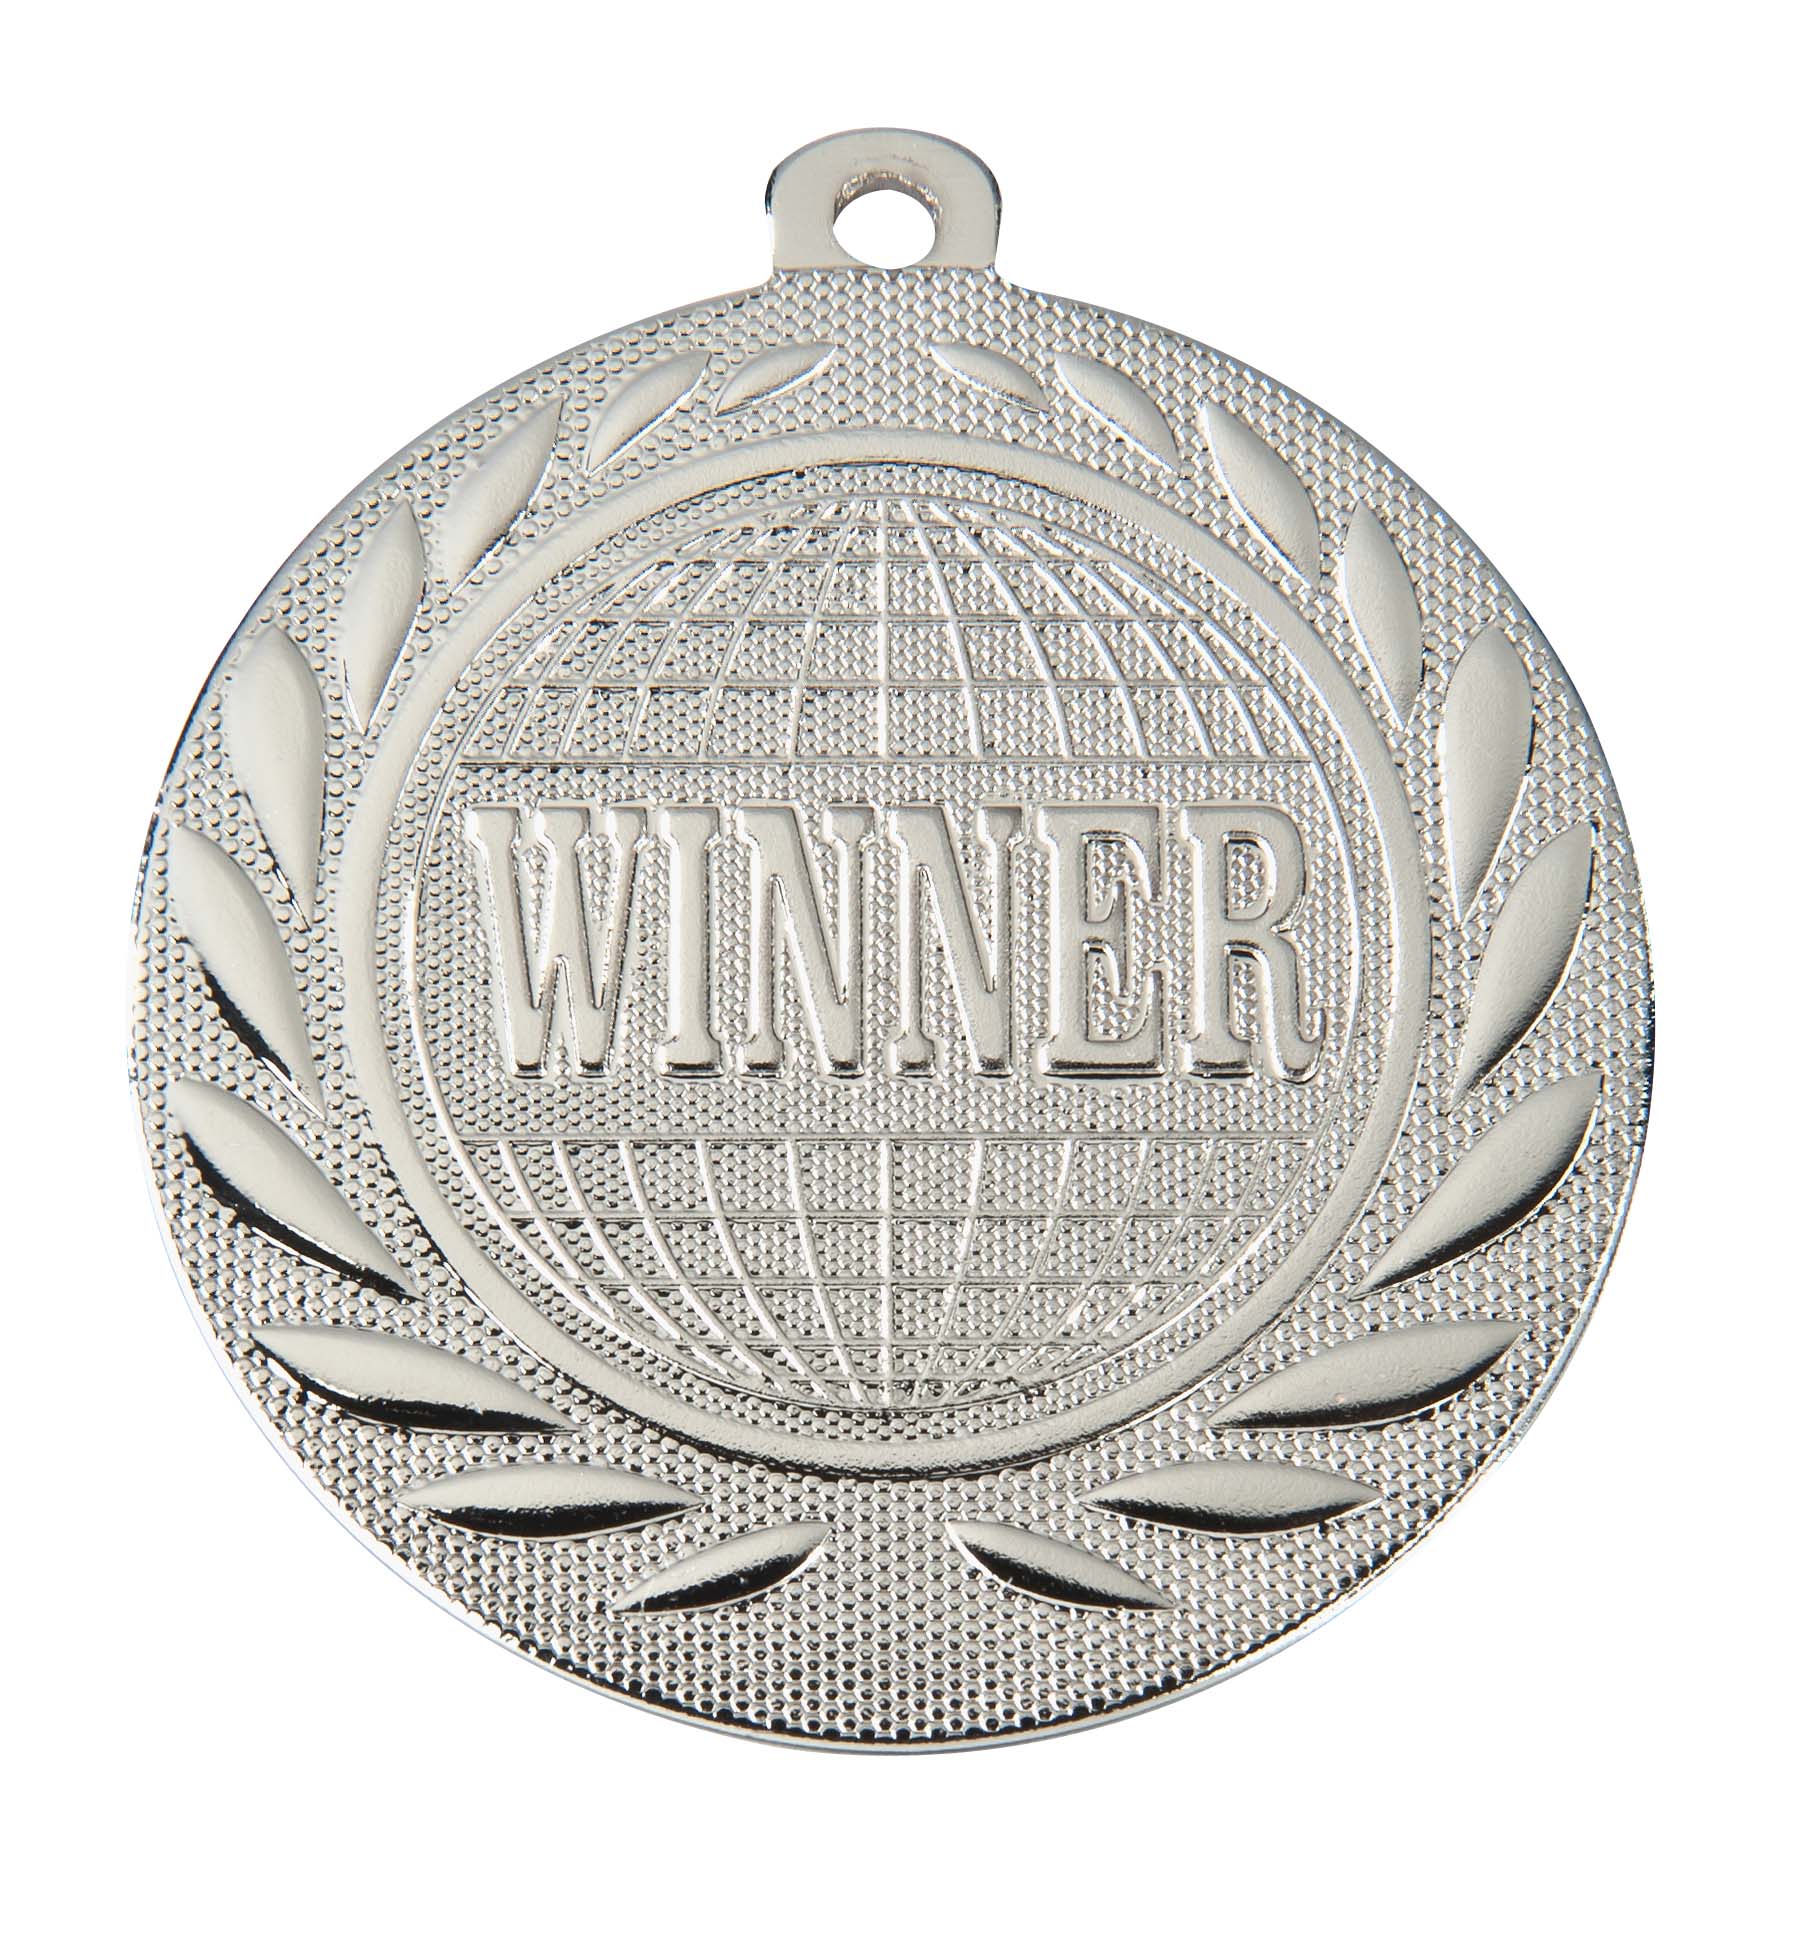 Winner-Medaille DI5000S inkl. Band und Beschriftung Silber Fertig montiert gegen Aufpreis